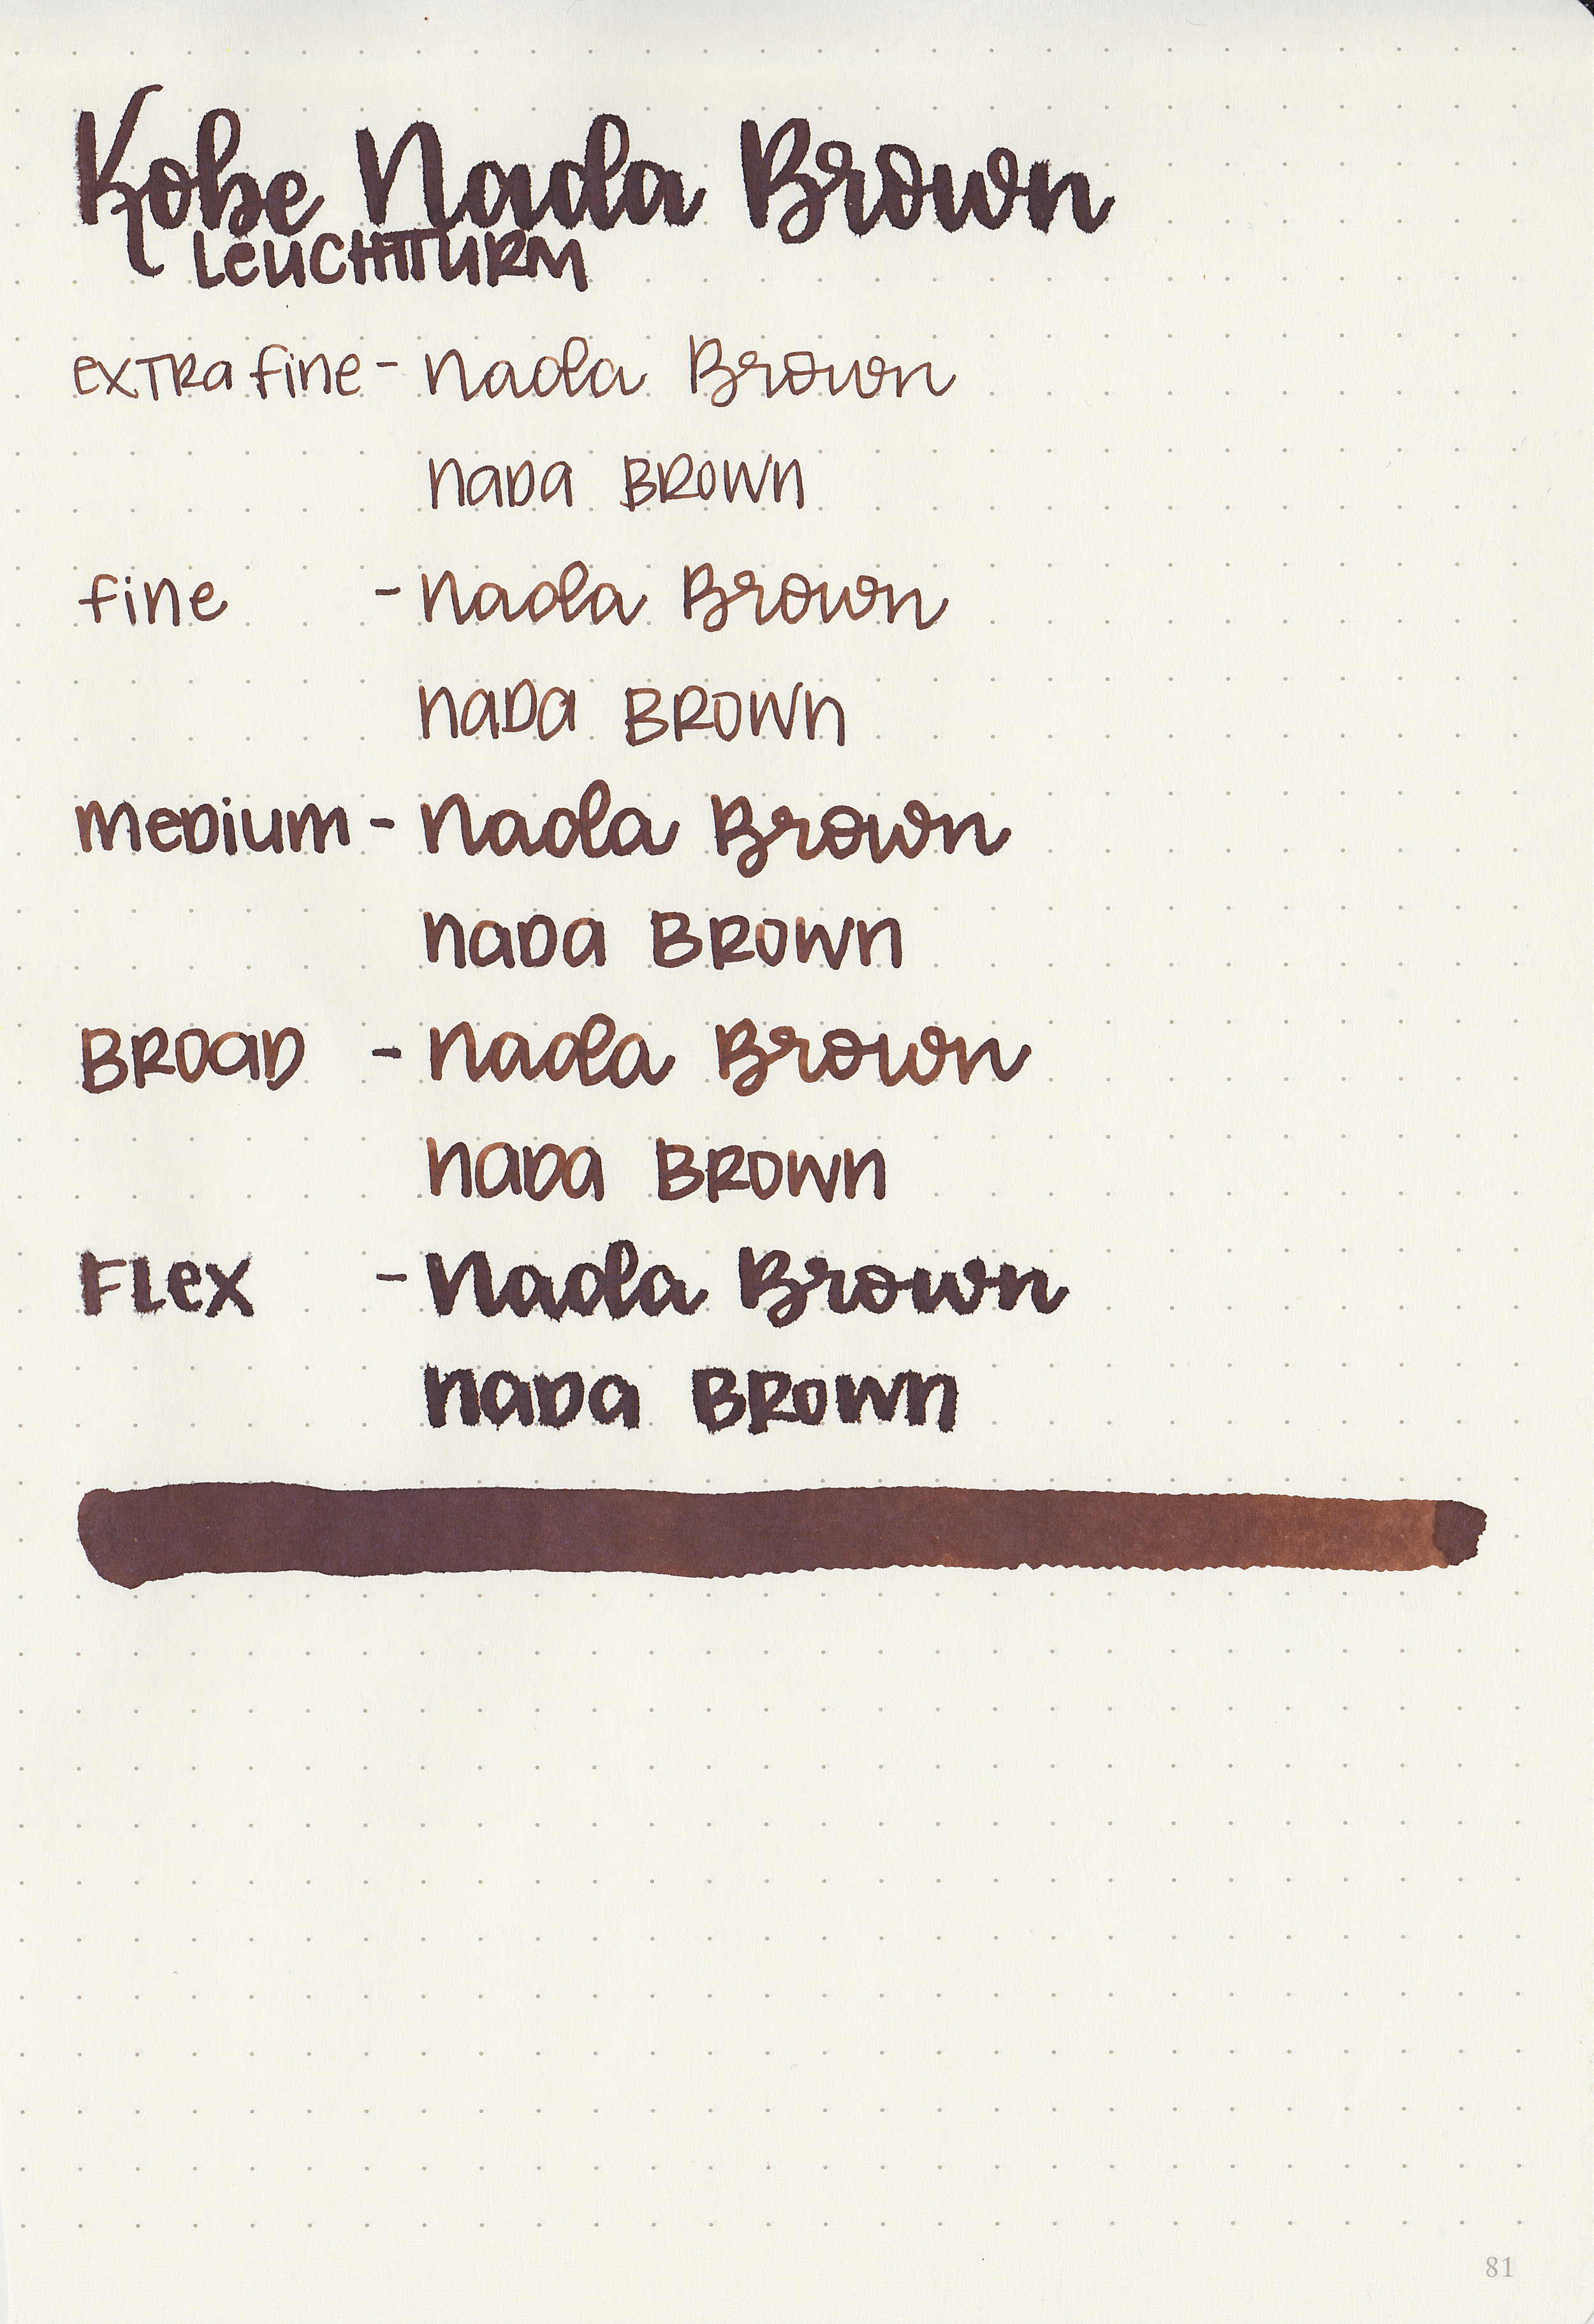 nk-nada-brown-9.jpg